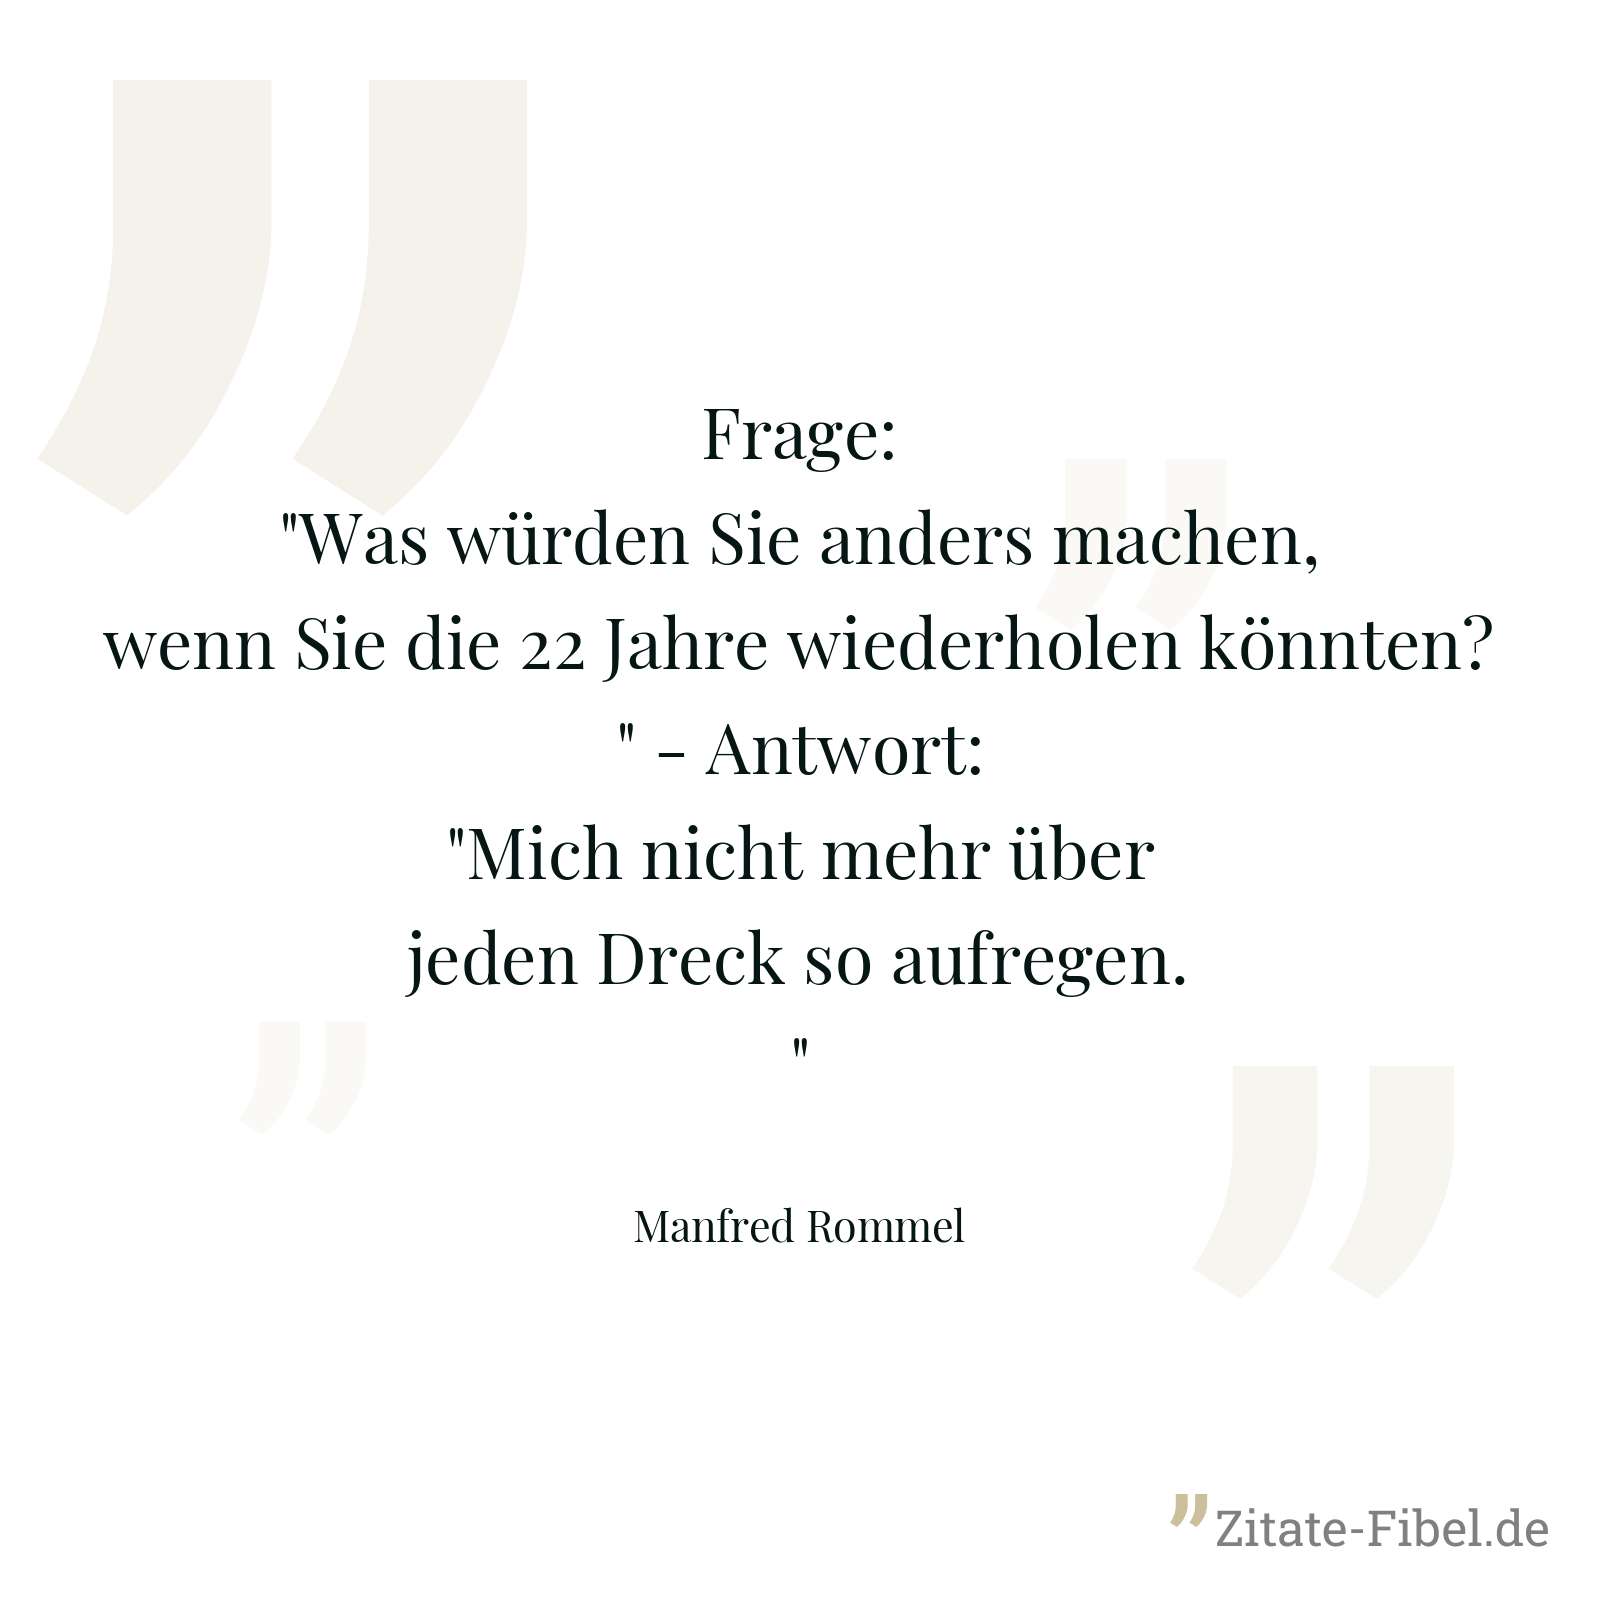 Frage: "Was würden Sie anders machen, wenn Sie die 22 Jahre wiederholen könnten?" - Antwort: "Mich nicht mehr über jeden Dreck so aufregen." - Manfred Rommel